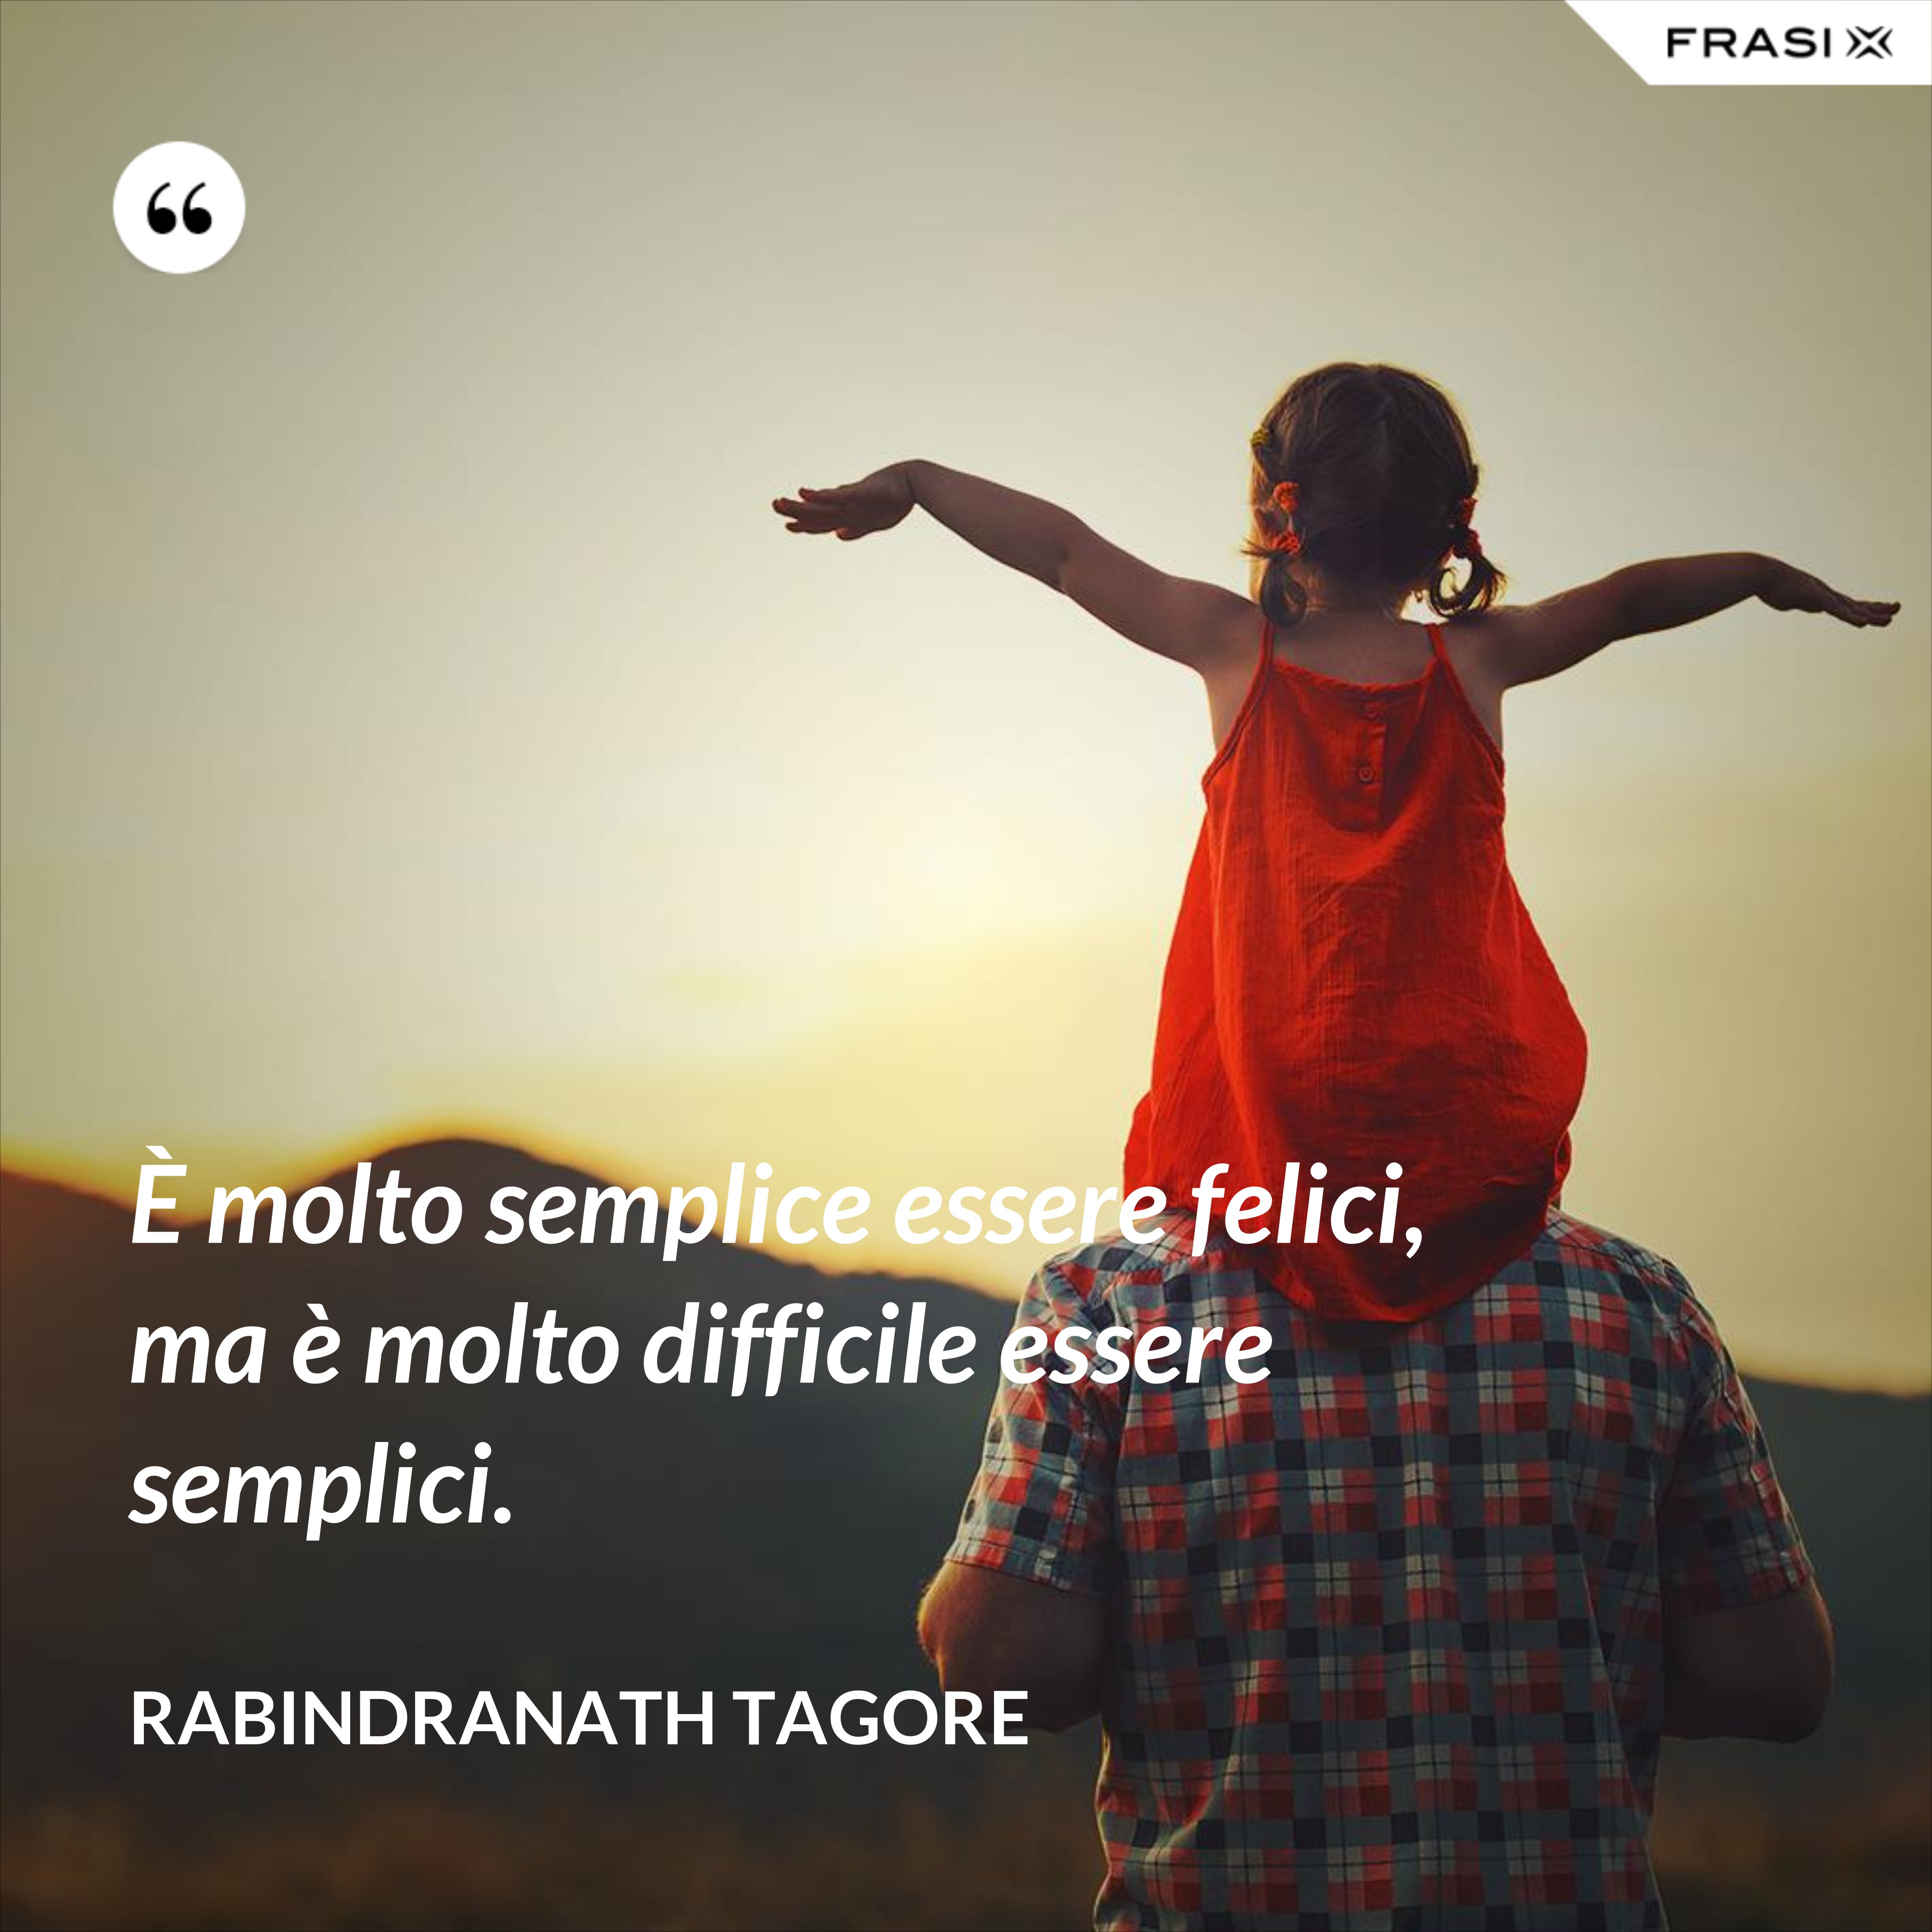 È molto semplice essere felici, ma è molto difficile essere semplici. - Rabindranath Tagore